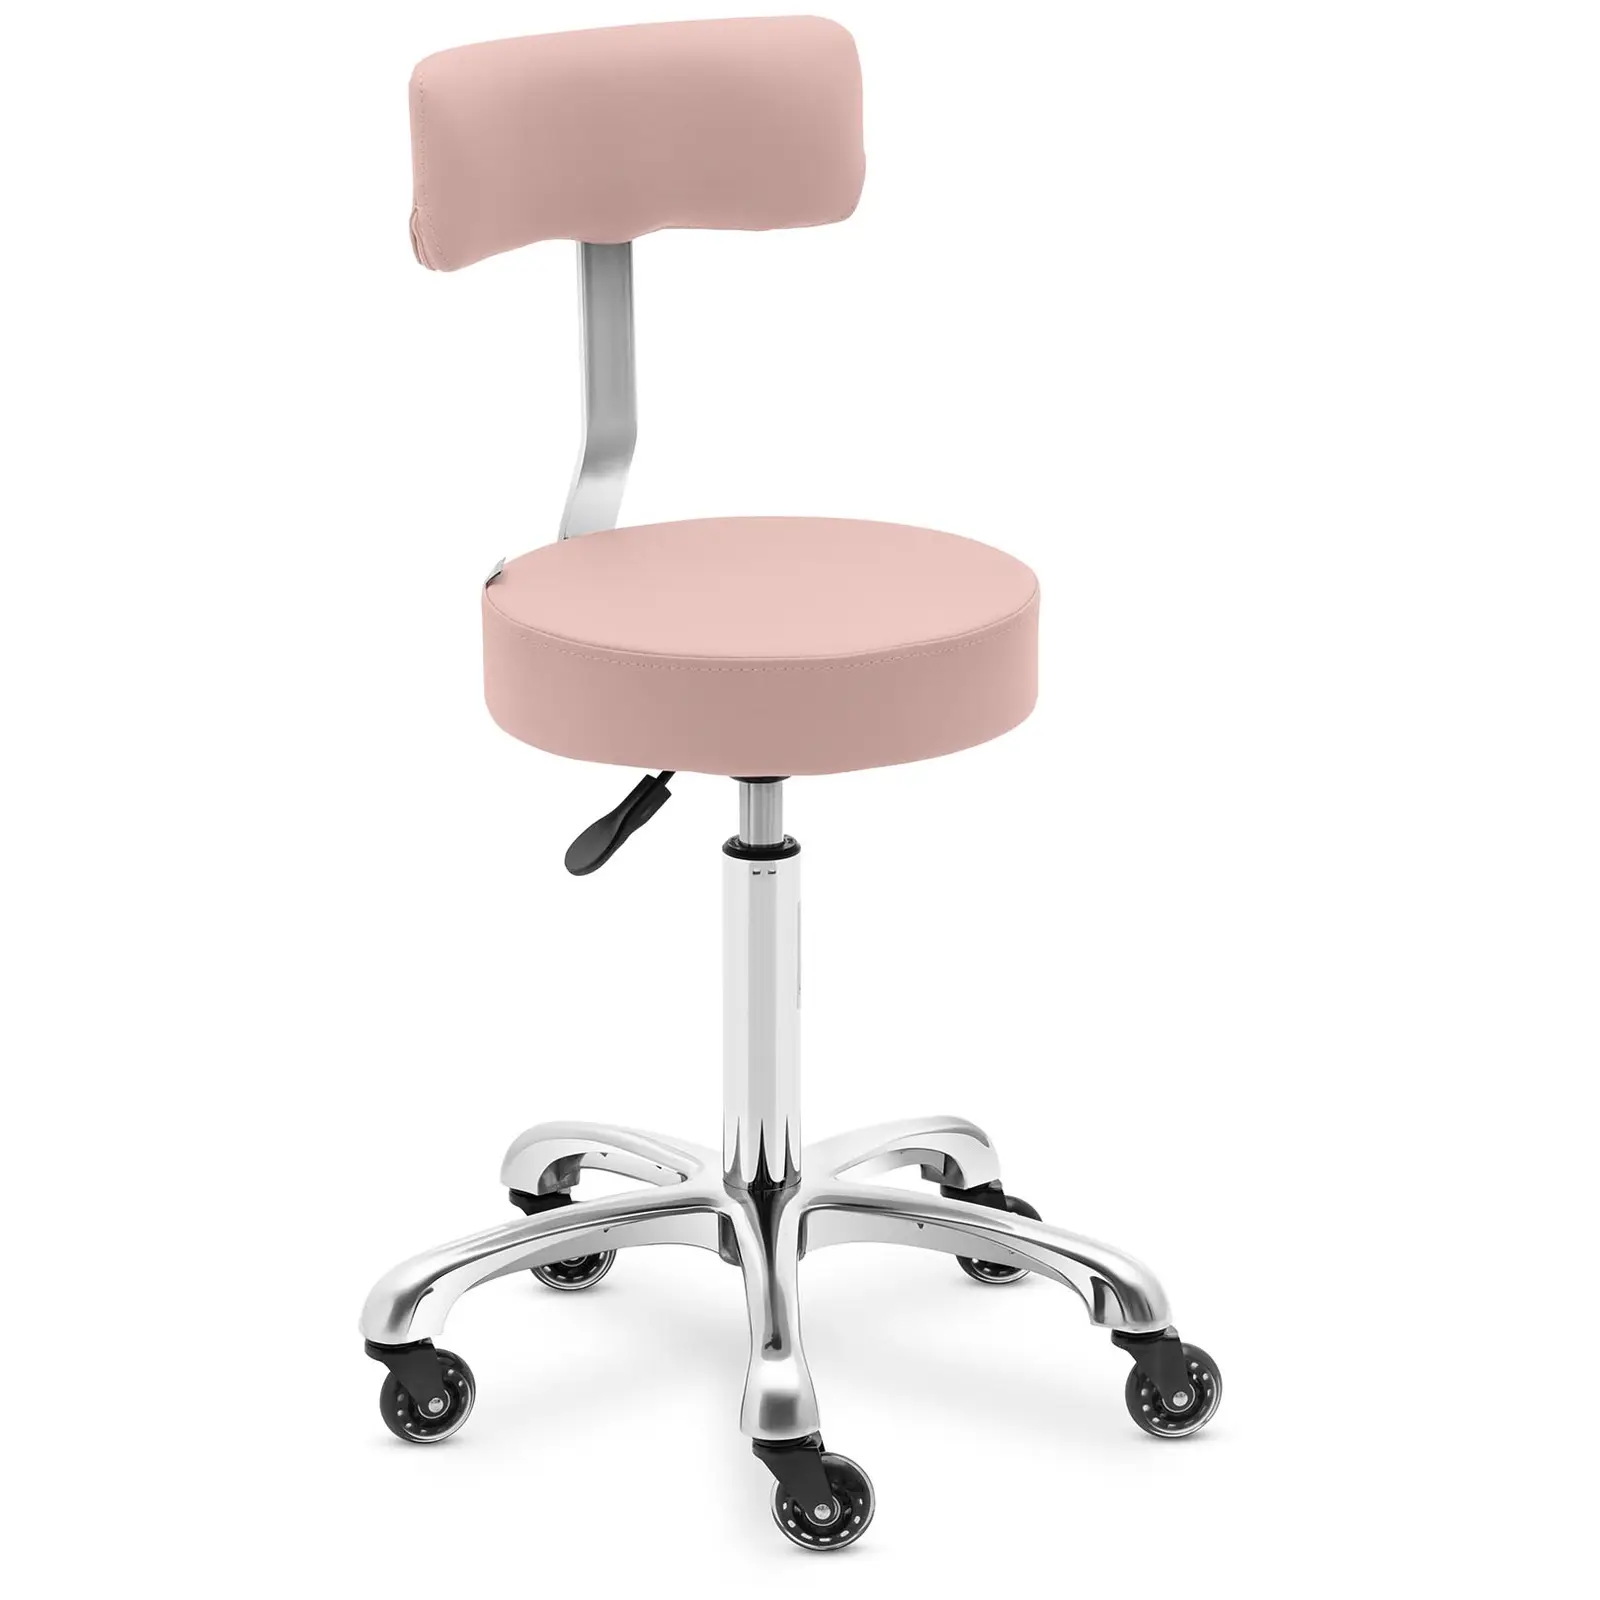 Cadeira para salão de beleza - mm - cor-de-rosa